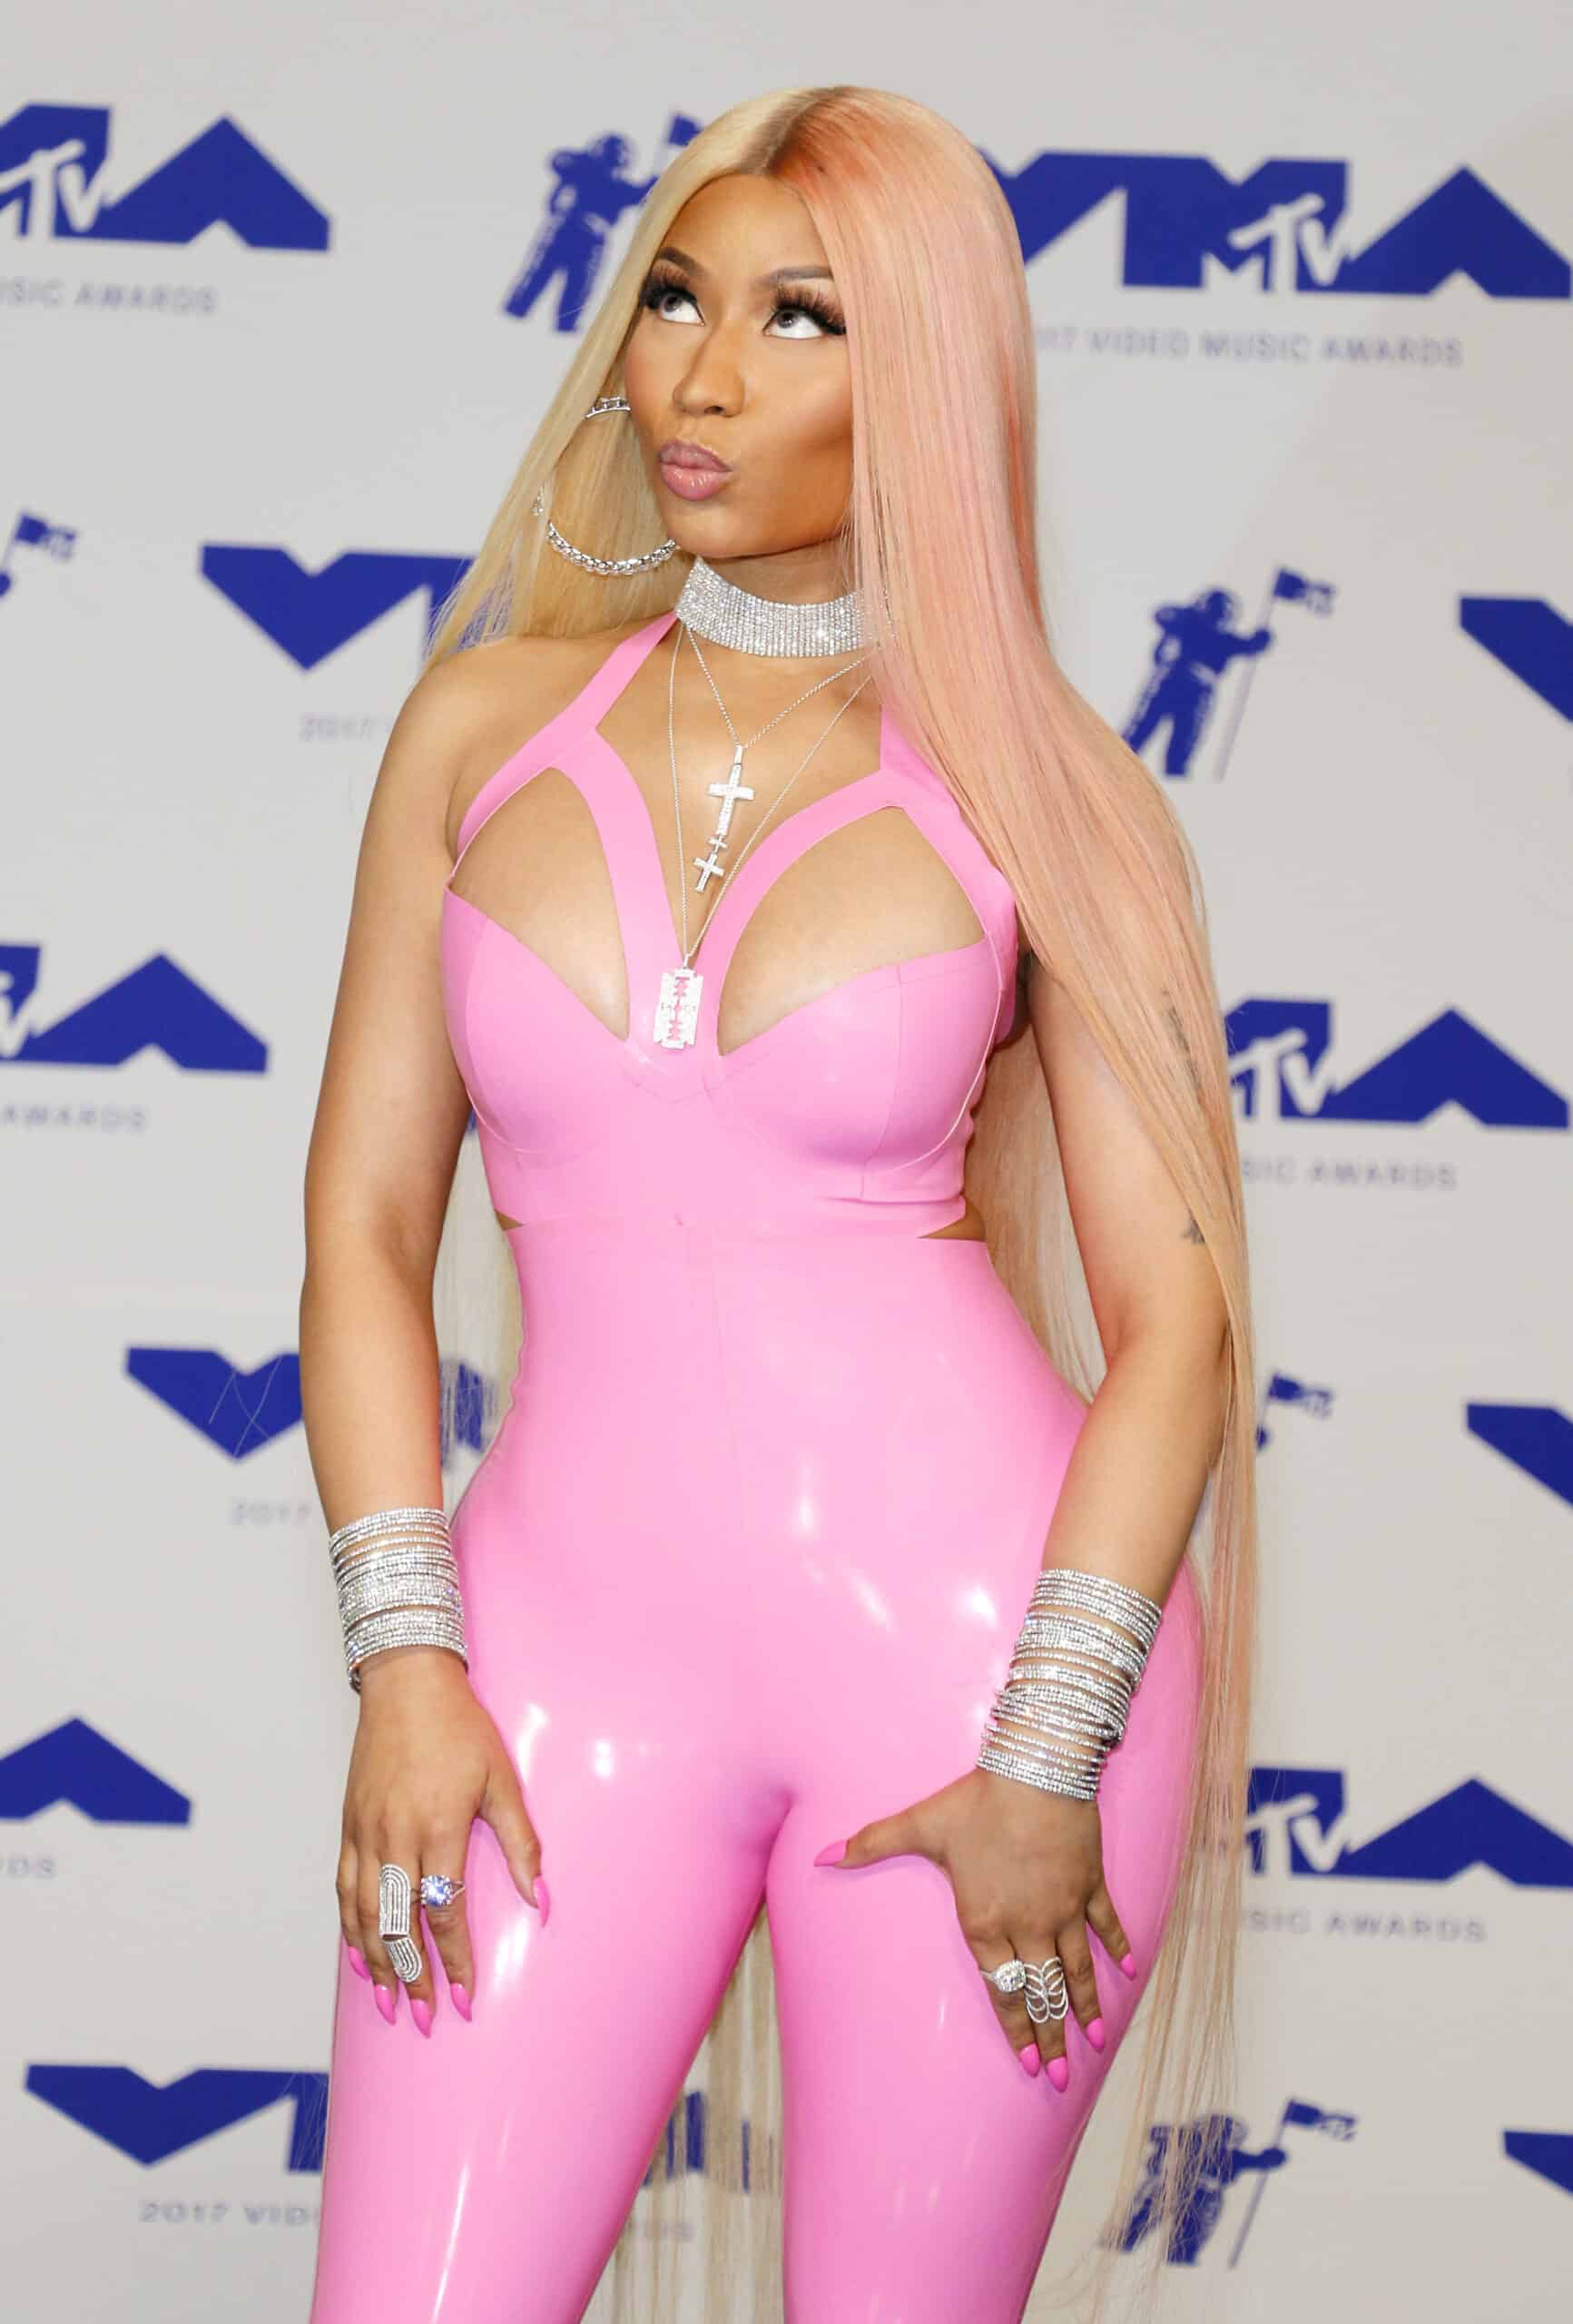 What Makeup Does Nicki Minaj Wear?